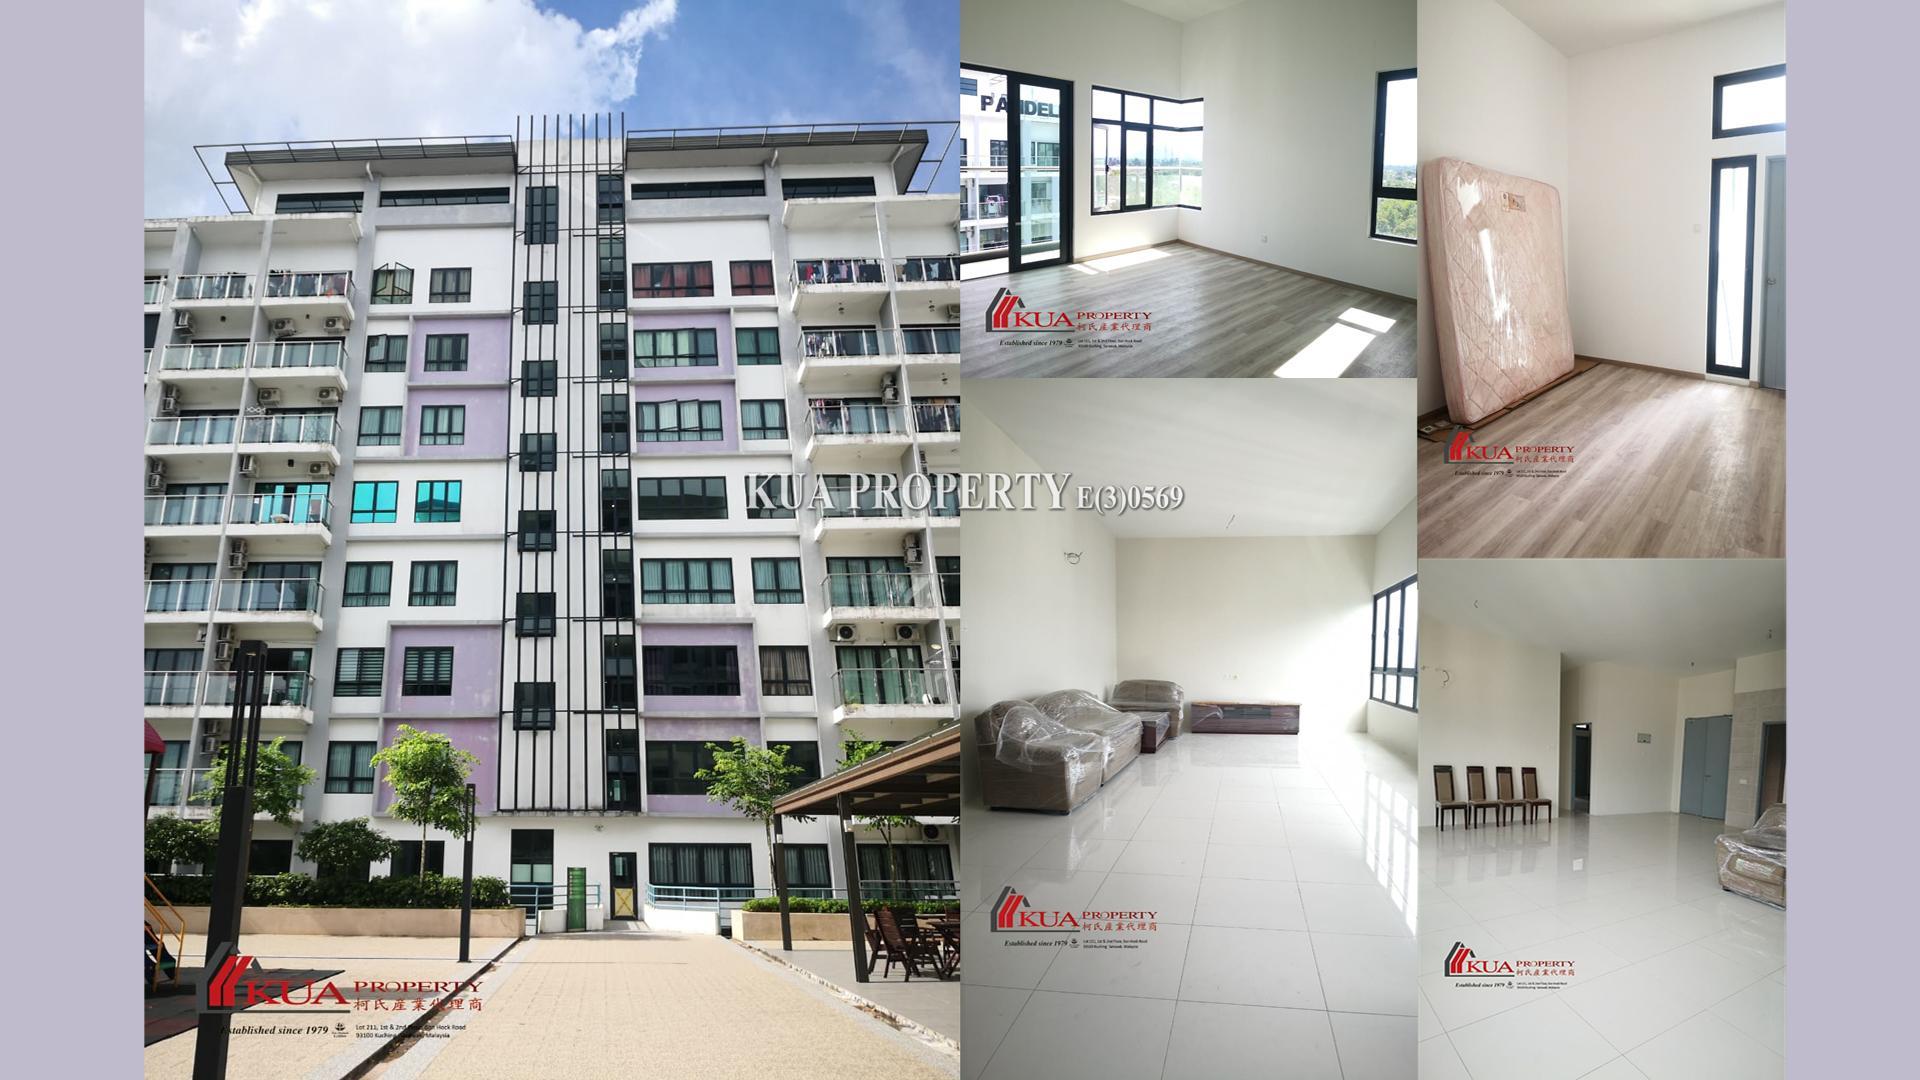 P’ Residences Penthouses Unit For Rent! Located at Jalan Batu Kawa